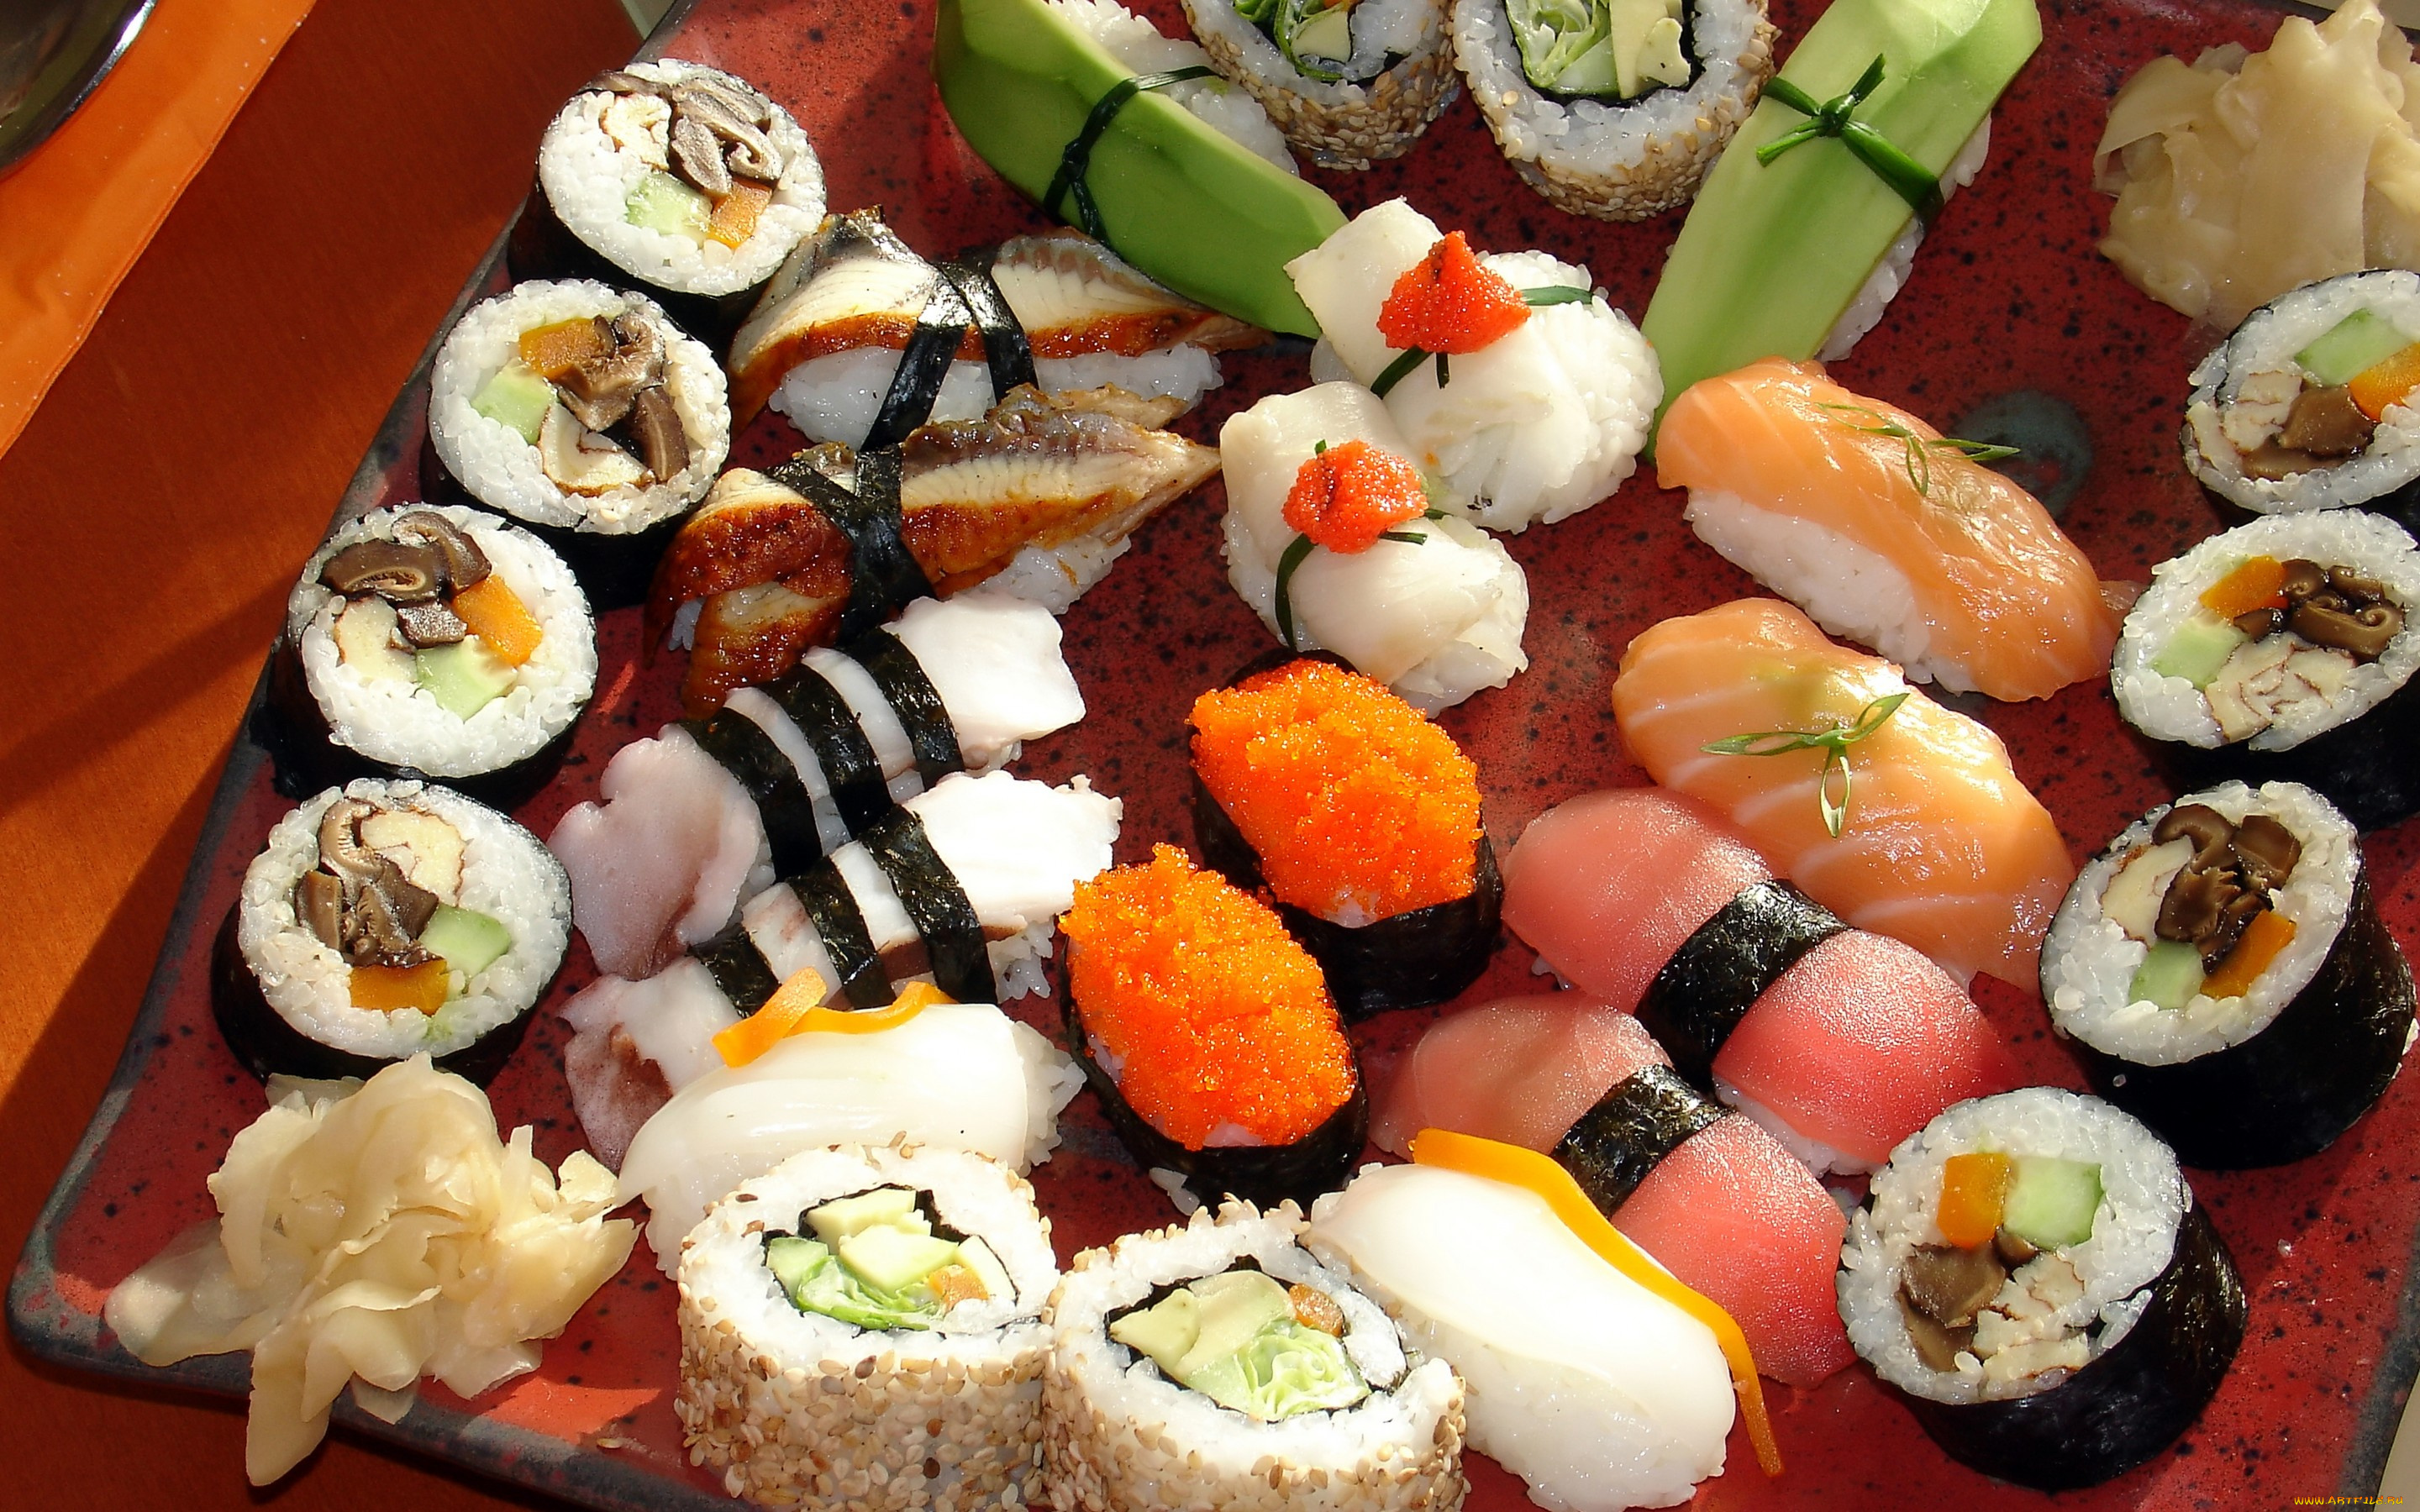 еда, рыба, , морепродукты, , суши, , роллы, зелень, ломтики, японская, кухня, сервировка, Япония, сашими, лосось, красная, роллы, морепродукты, грибы, васаби, имбирь, суси, суши, japan, food, перец, россыпь, рис, икра, sushi